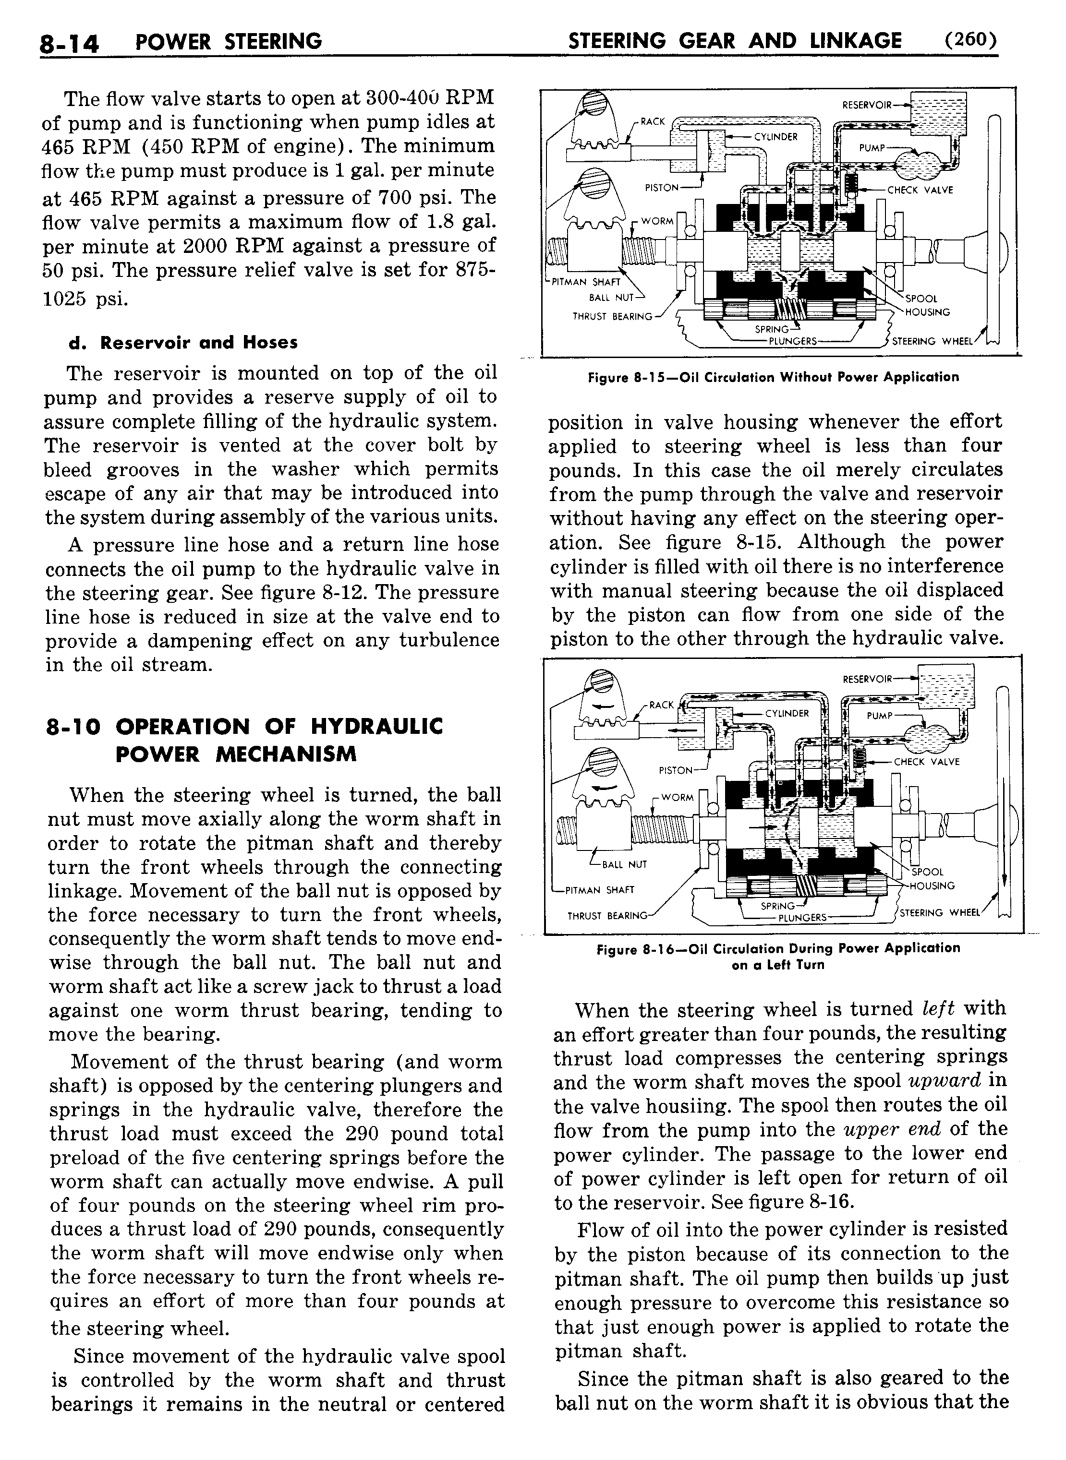 n_09 1955 Buick Shop Manual - Steering-014-014.jpg